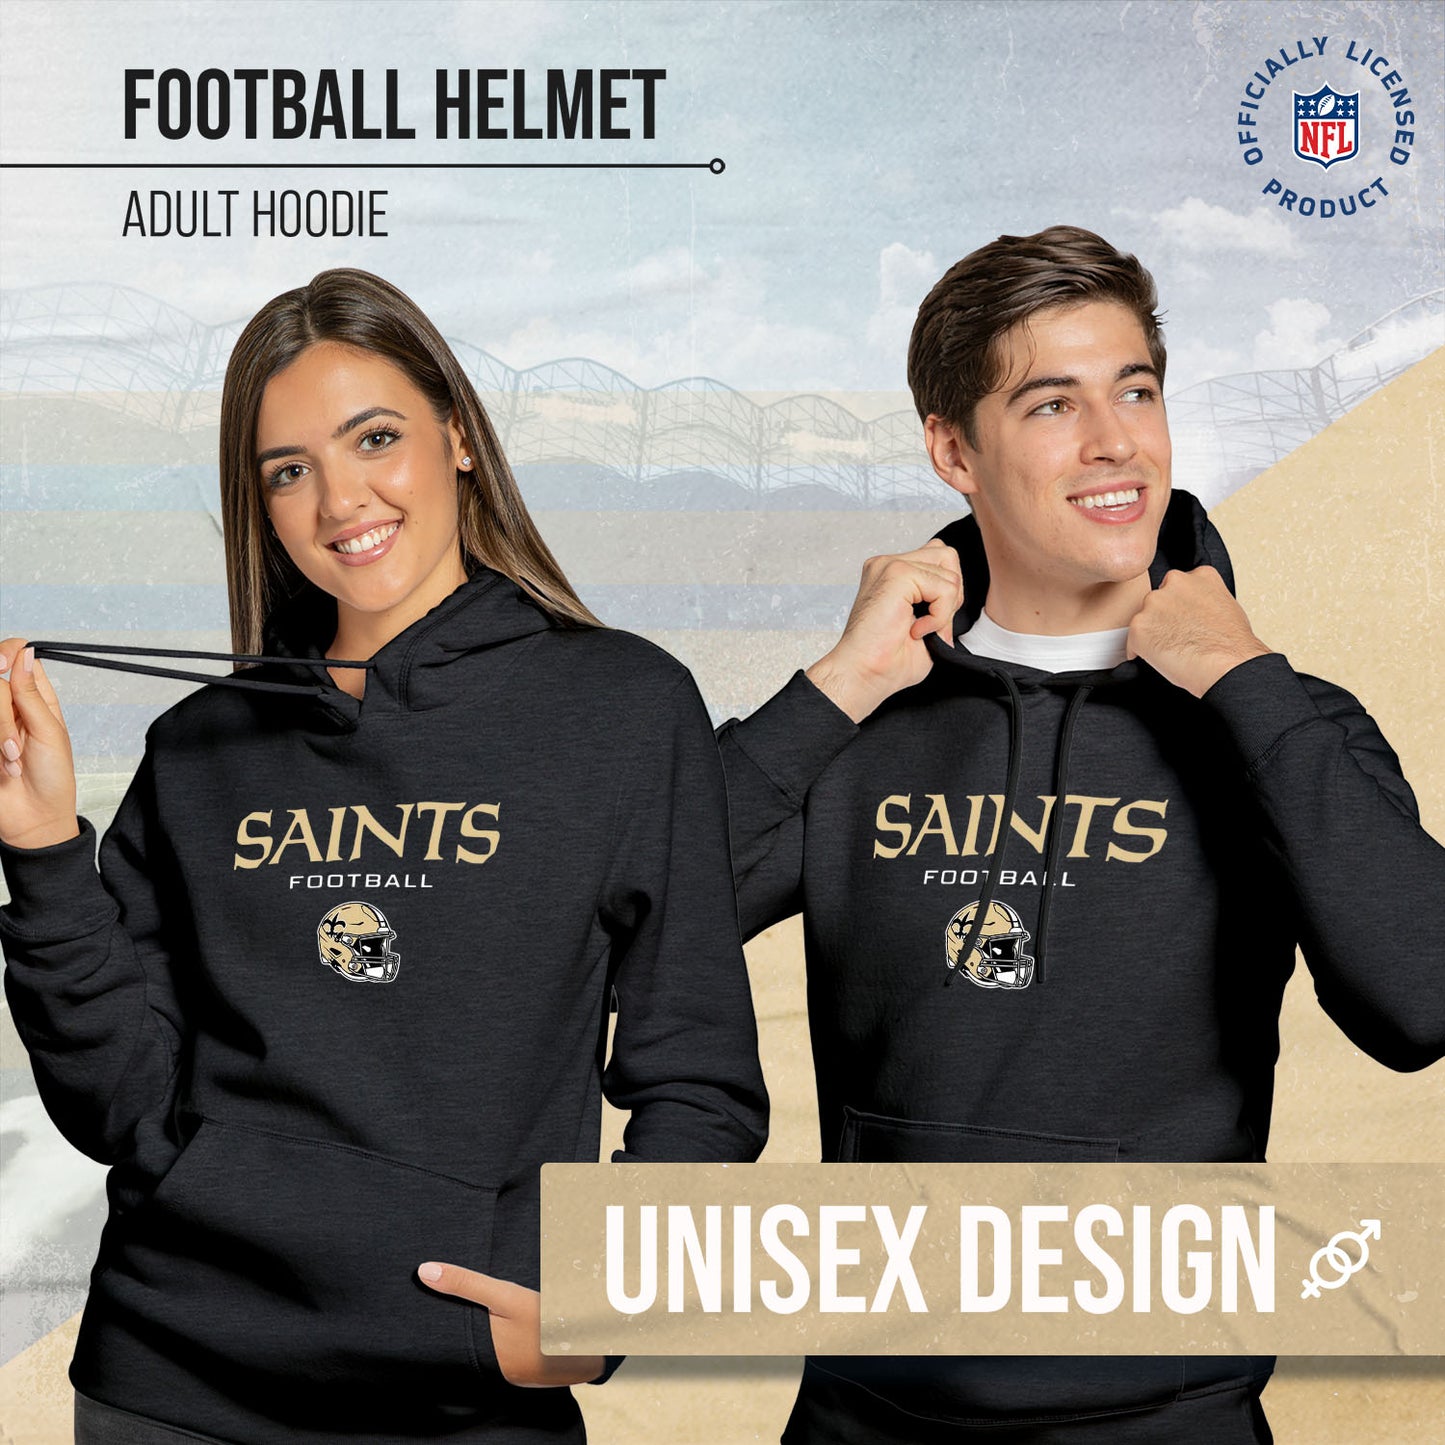 New Orleans Saints Adult NFL Football Helmet Heather Hooded Sweatshirt  - Charcoal